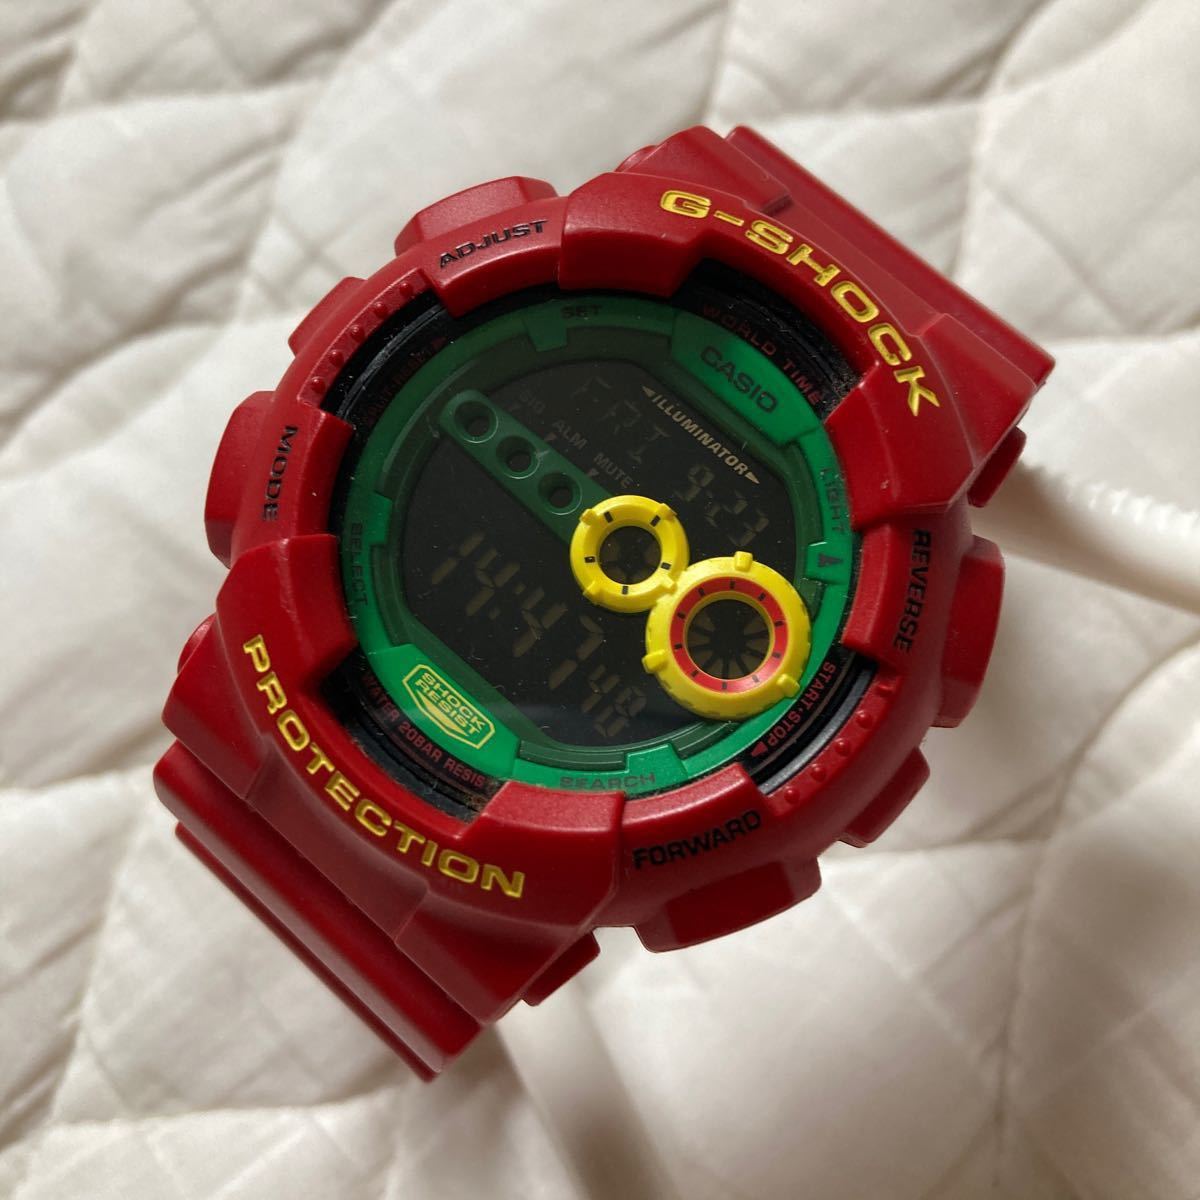 G-SHOCK CASIO Gショック カシオG-SHOCK レッド メンズ腕時計 カシオGショック GD-110RF